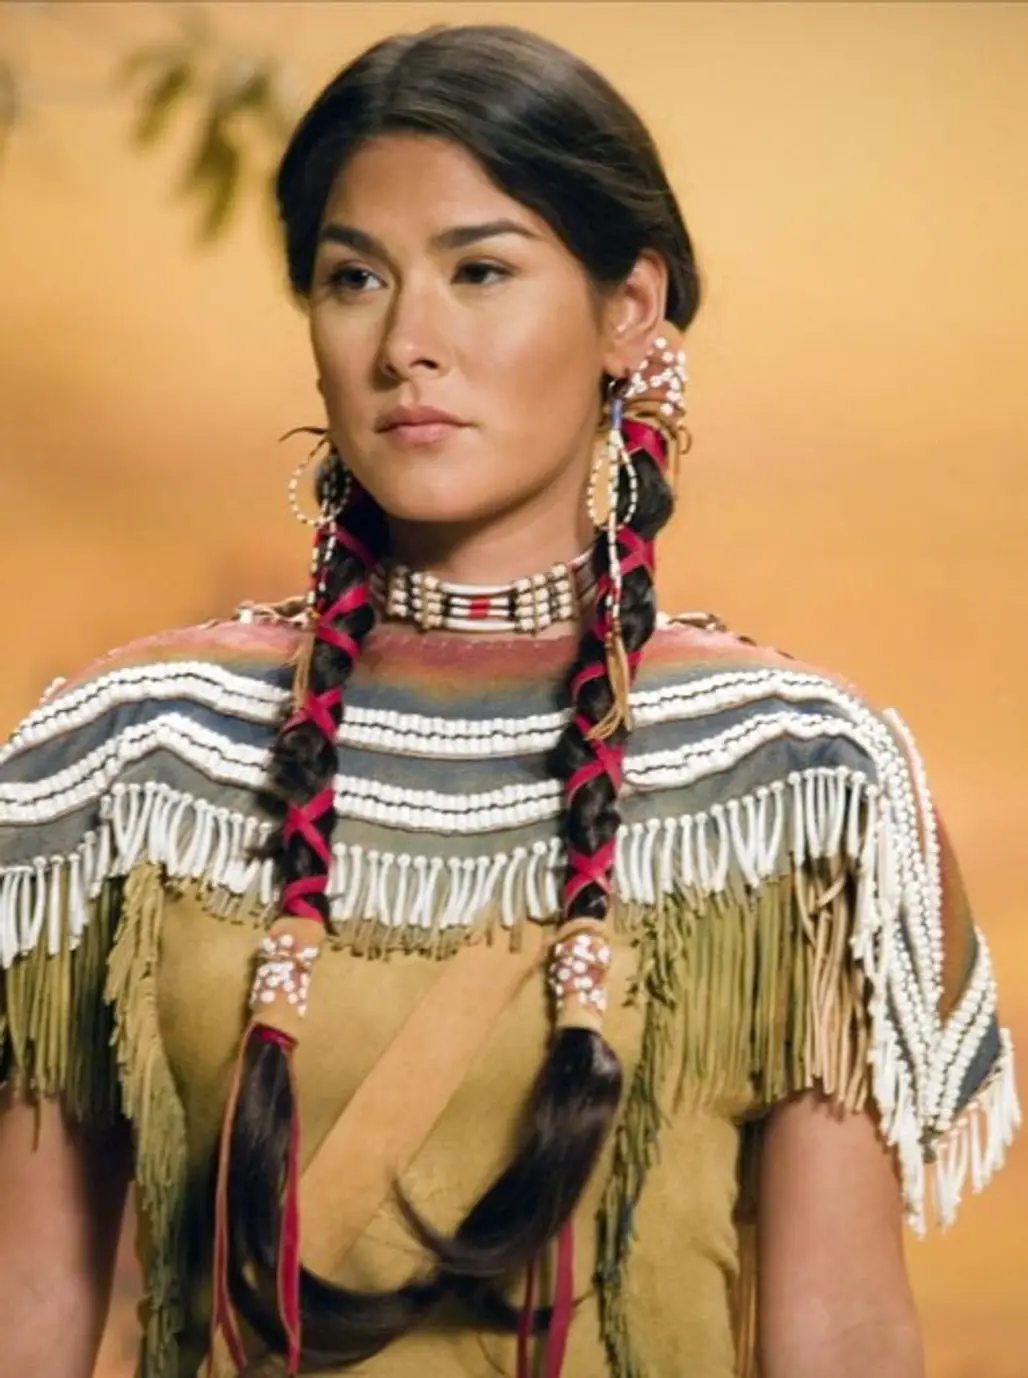 Sacagawea (1788 – 1812)